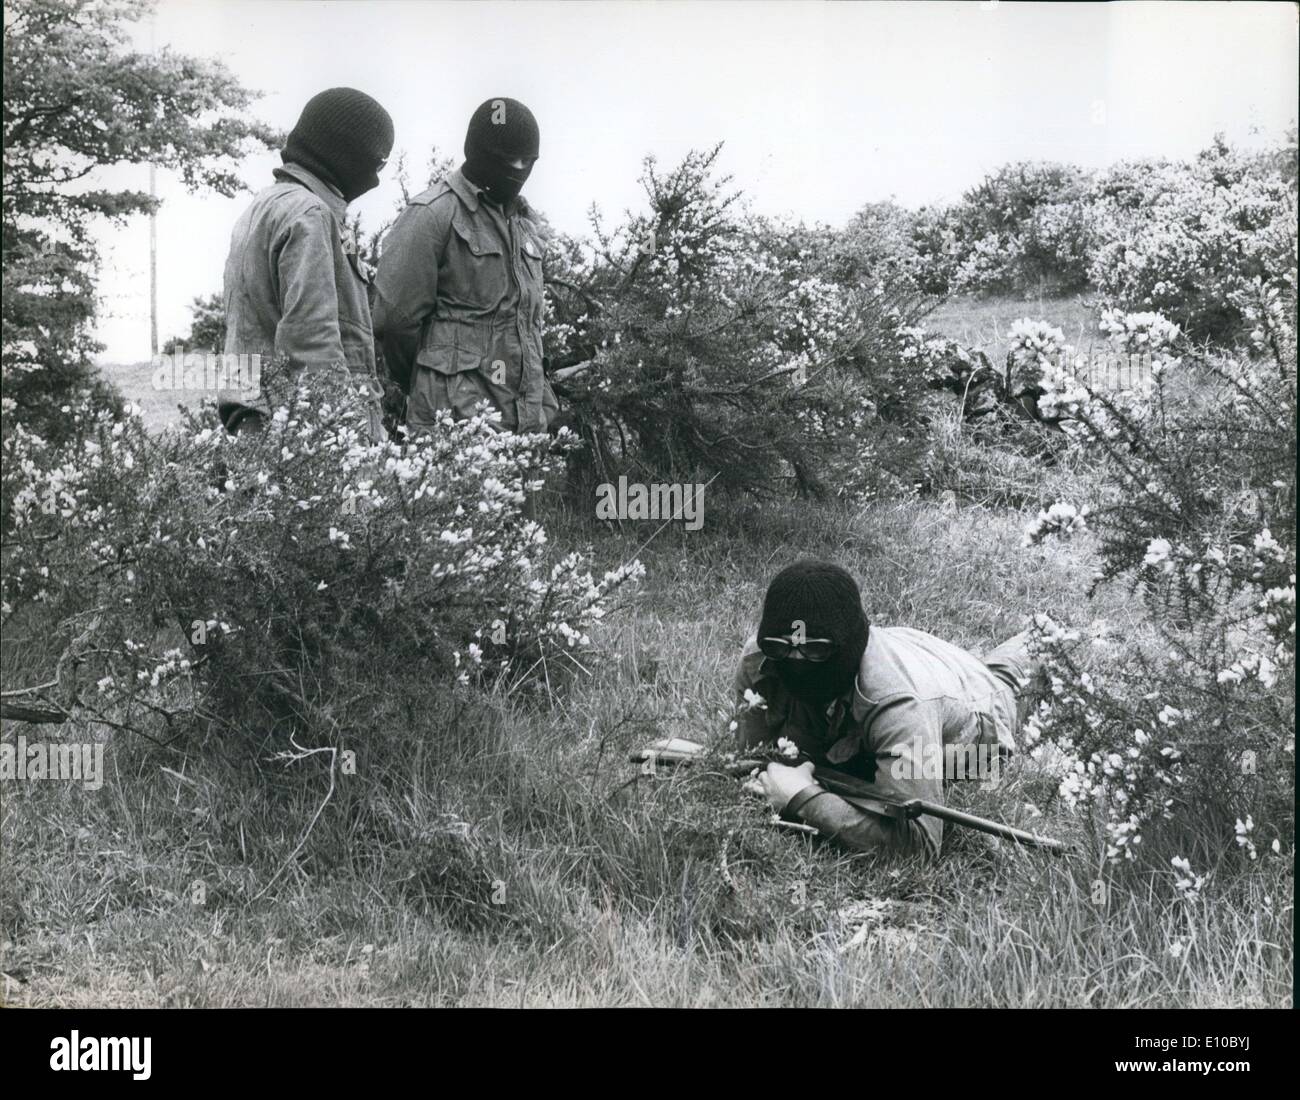 Giugno 06, 1972 - Membri del militante protestante Ulster Defence Association hanno recentemente iniziato guerilla-warfare formazione in una appartata camp nella periferia di Ulster. Foto Stock